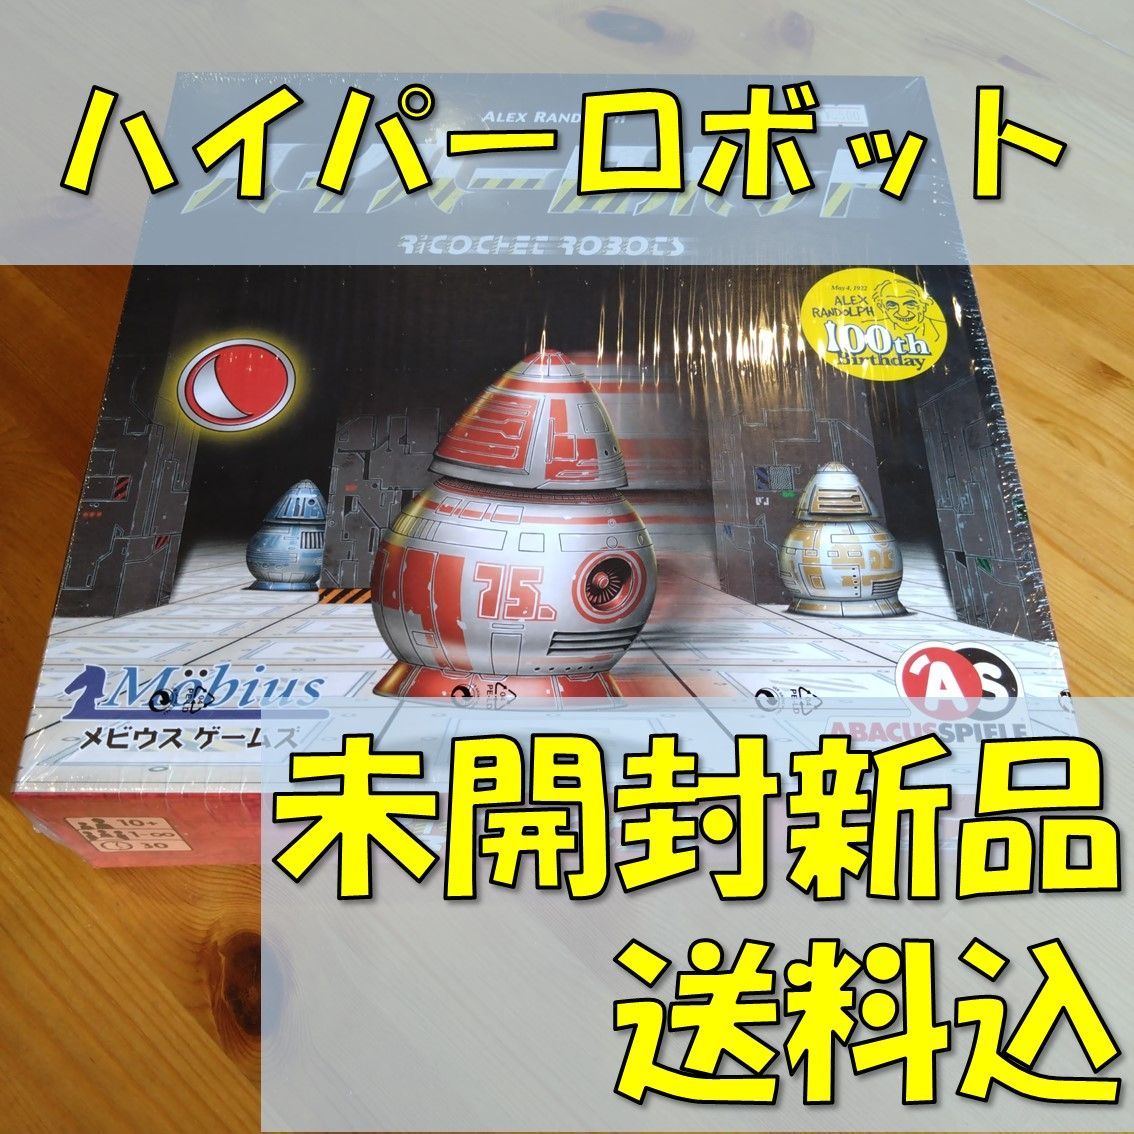 ハイパーロボット 日本語版 【ボードゲーム】 - メルカリ